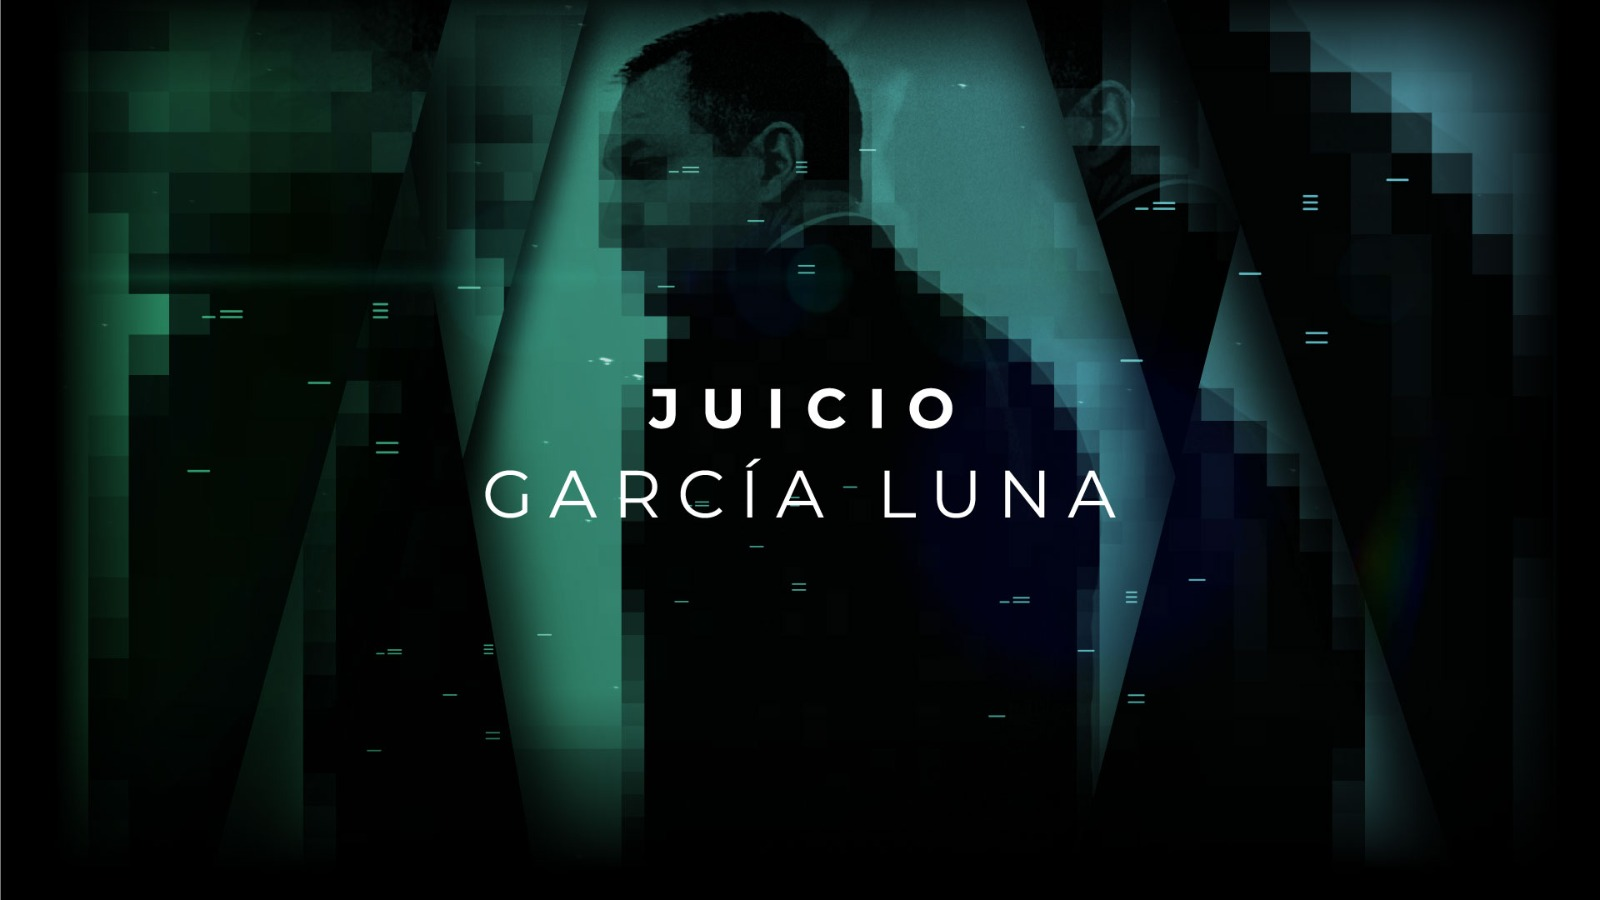 Juicio: García Luna